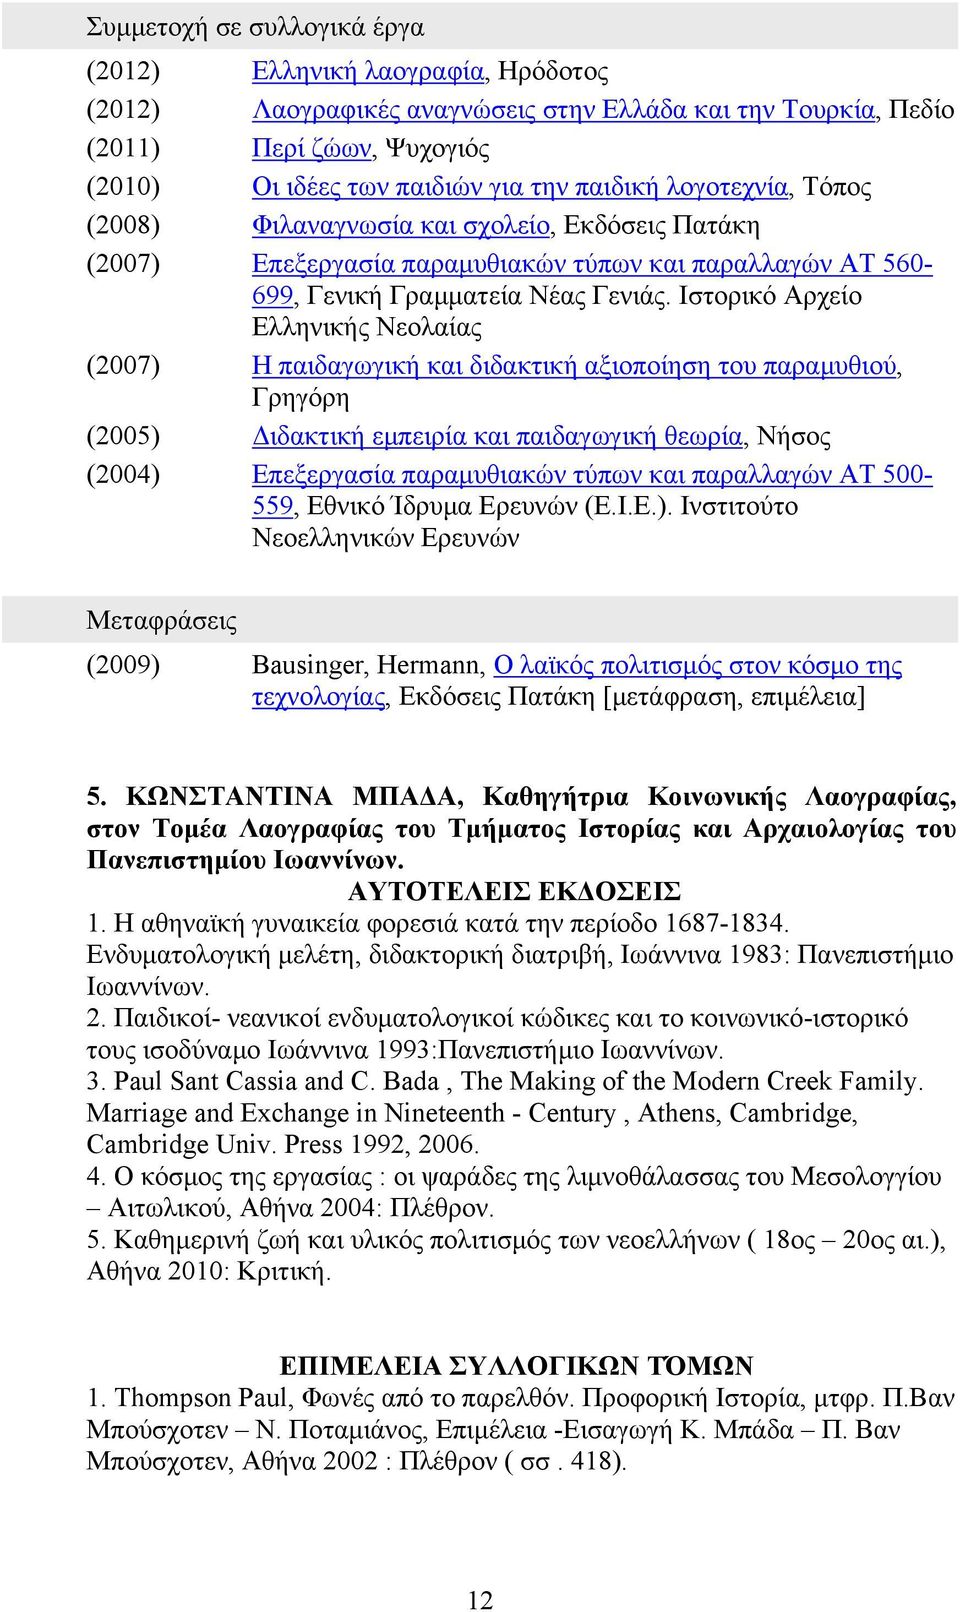 Ιστορικό Αρχείο Ελληνικής Νεολαίας (2007) Η παιδαγωγική και διδακτική αξιοποίηση του παραμυθιού, Γρηγόρη (2005) Διδακτική εμπειρία και παιδαγωγική θεωρία, Νήσος (2004) Επεξεργασία παραμυθιακών τύπων